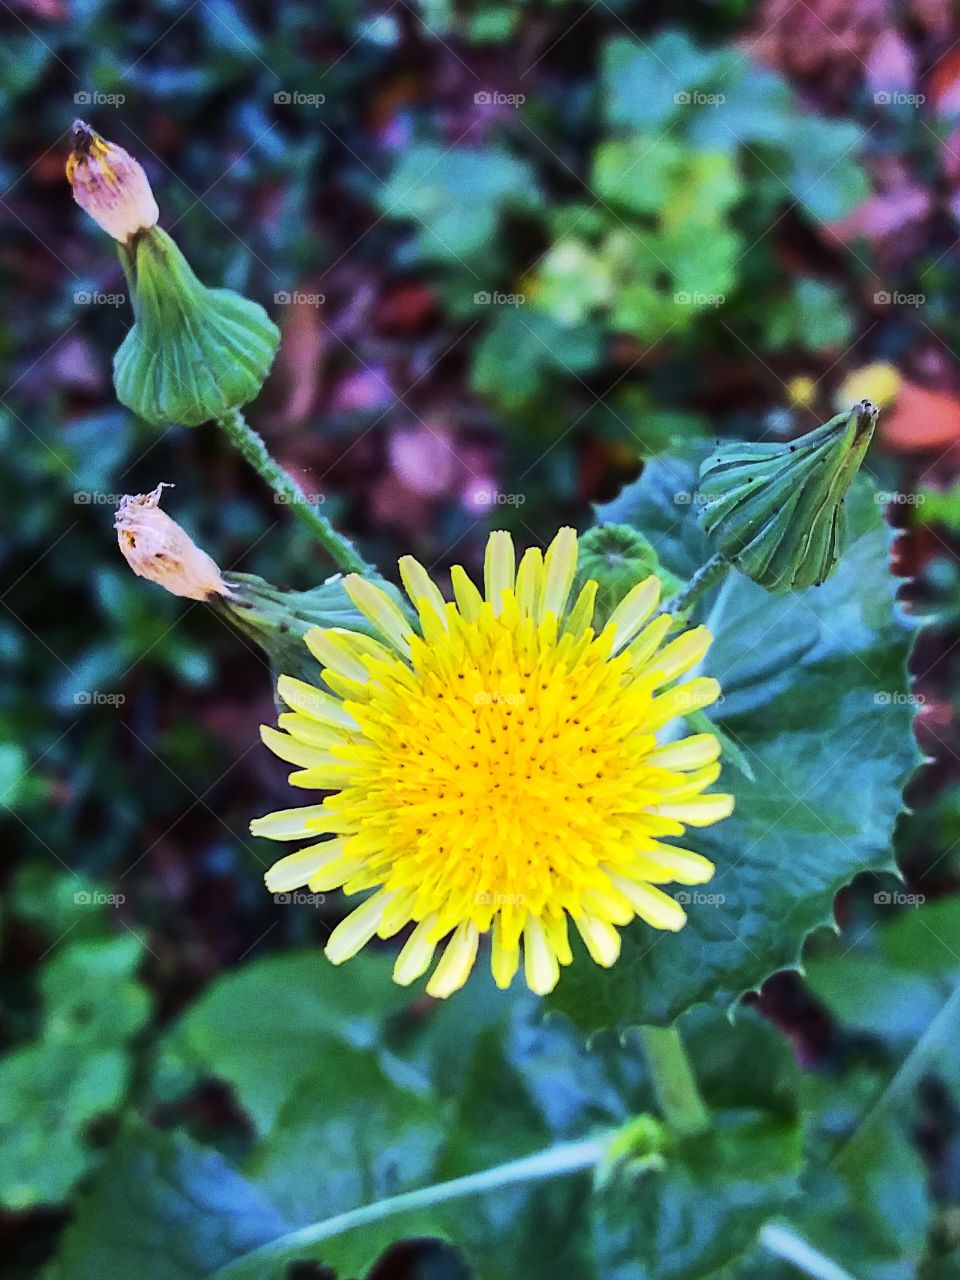 sunburst flower